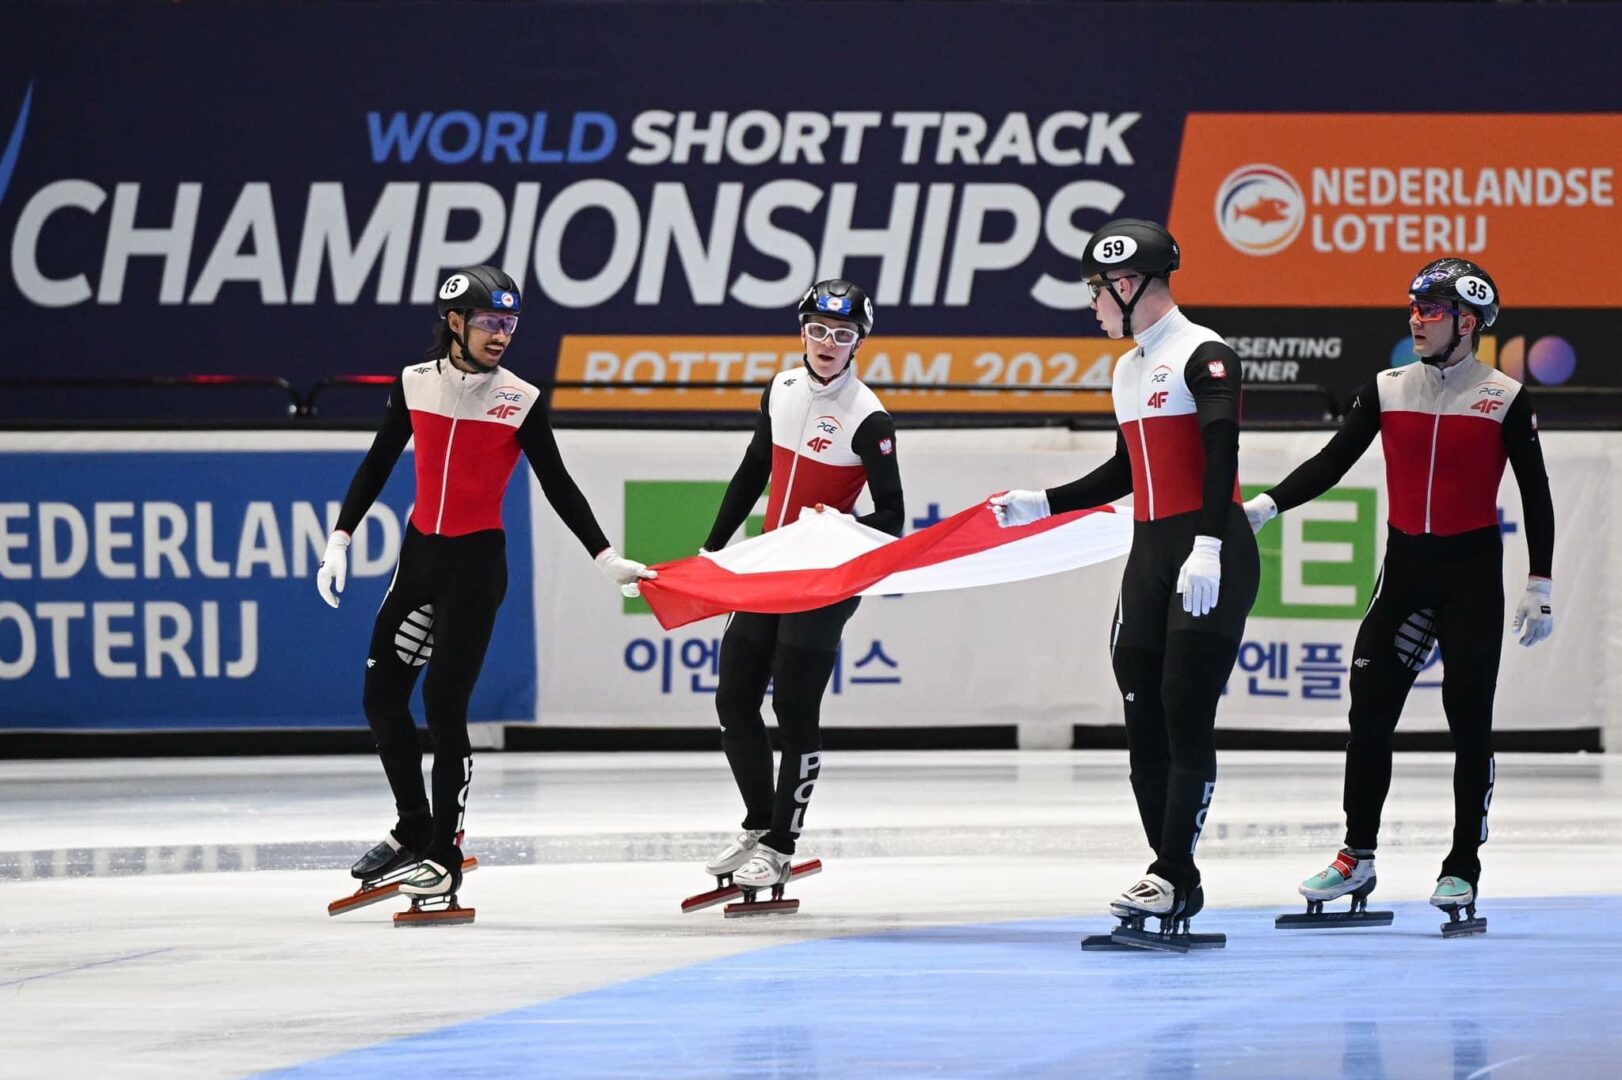 Félix Pigeon (deuxième à partir de la gauche) est monté sur le podium du Championnat du monde de patinage de vitesse courte piste avec ses coéquipiers de la Pologne au relais 5000 m. Photo gracieuseté